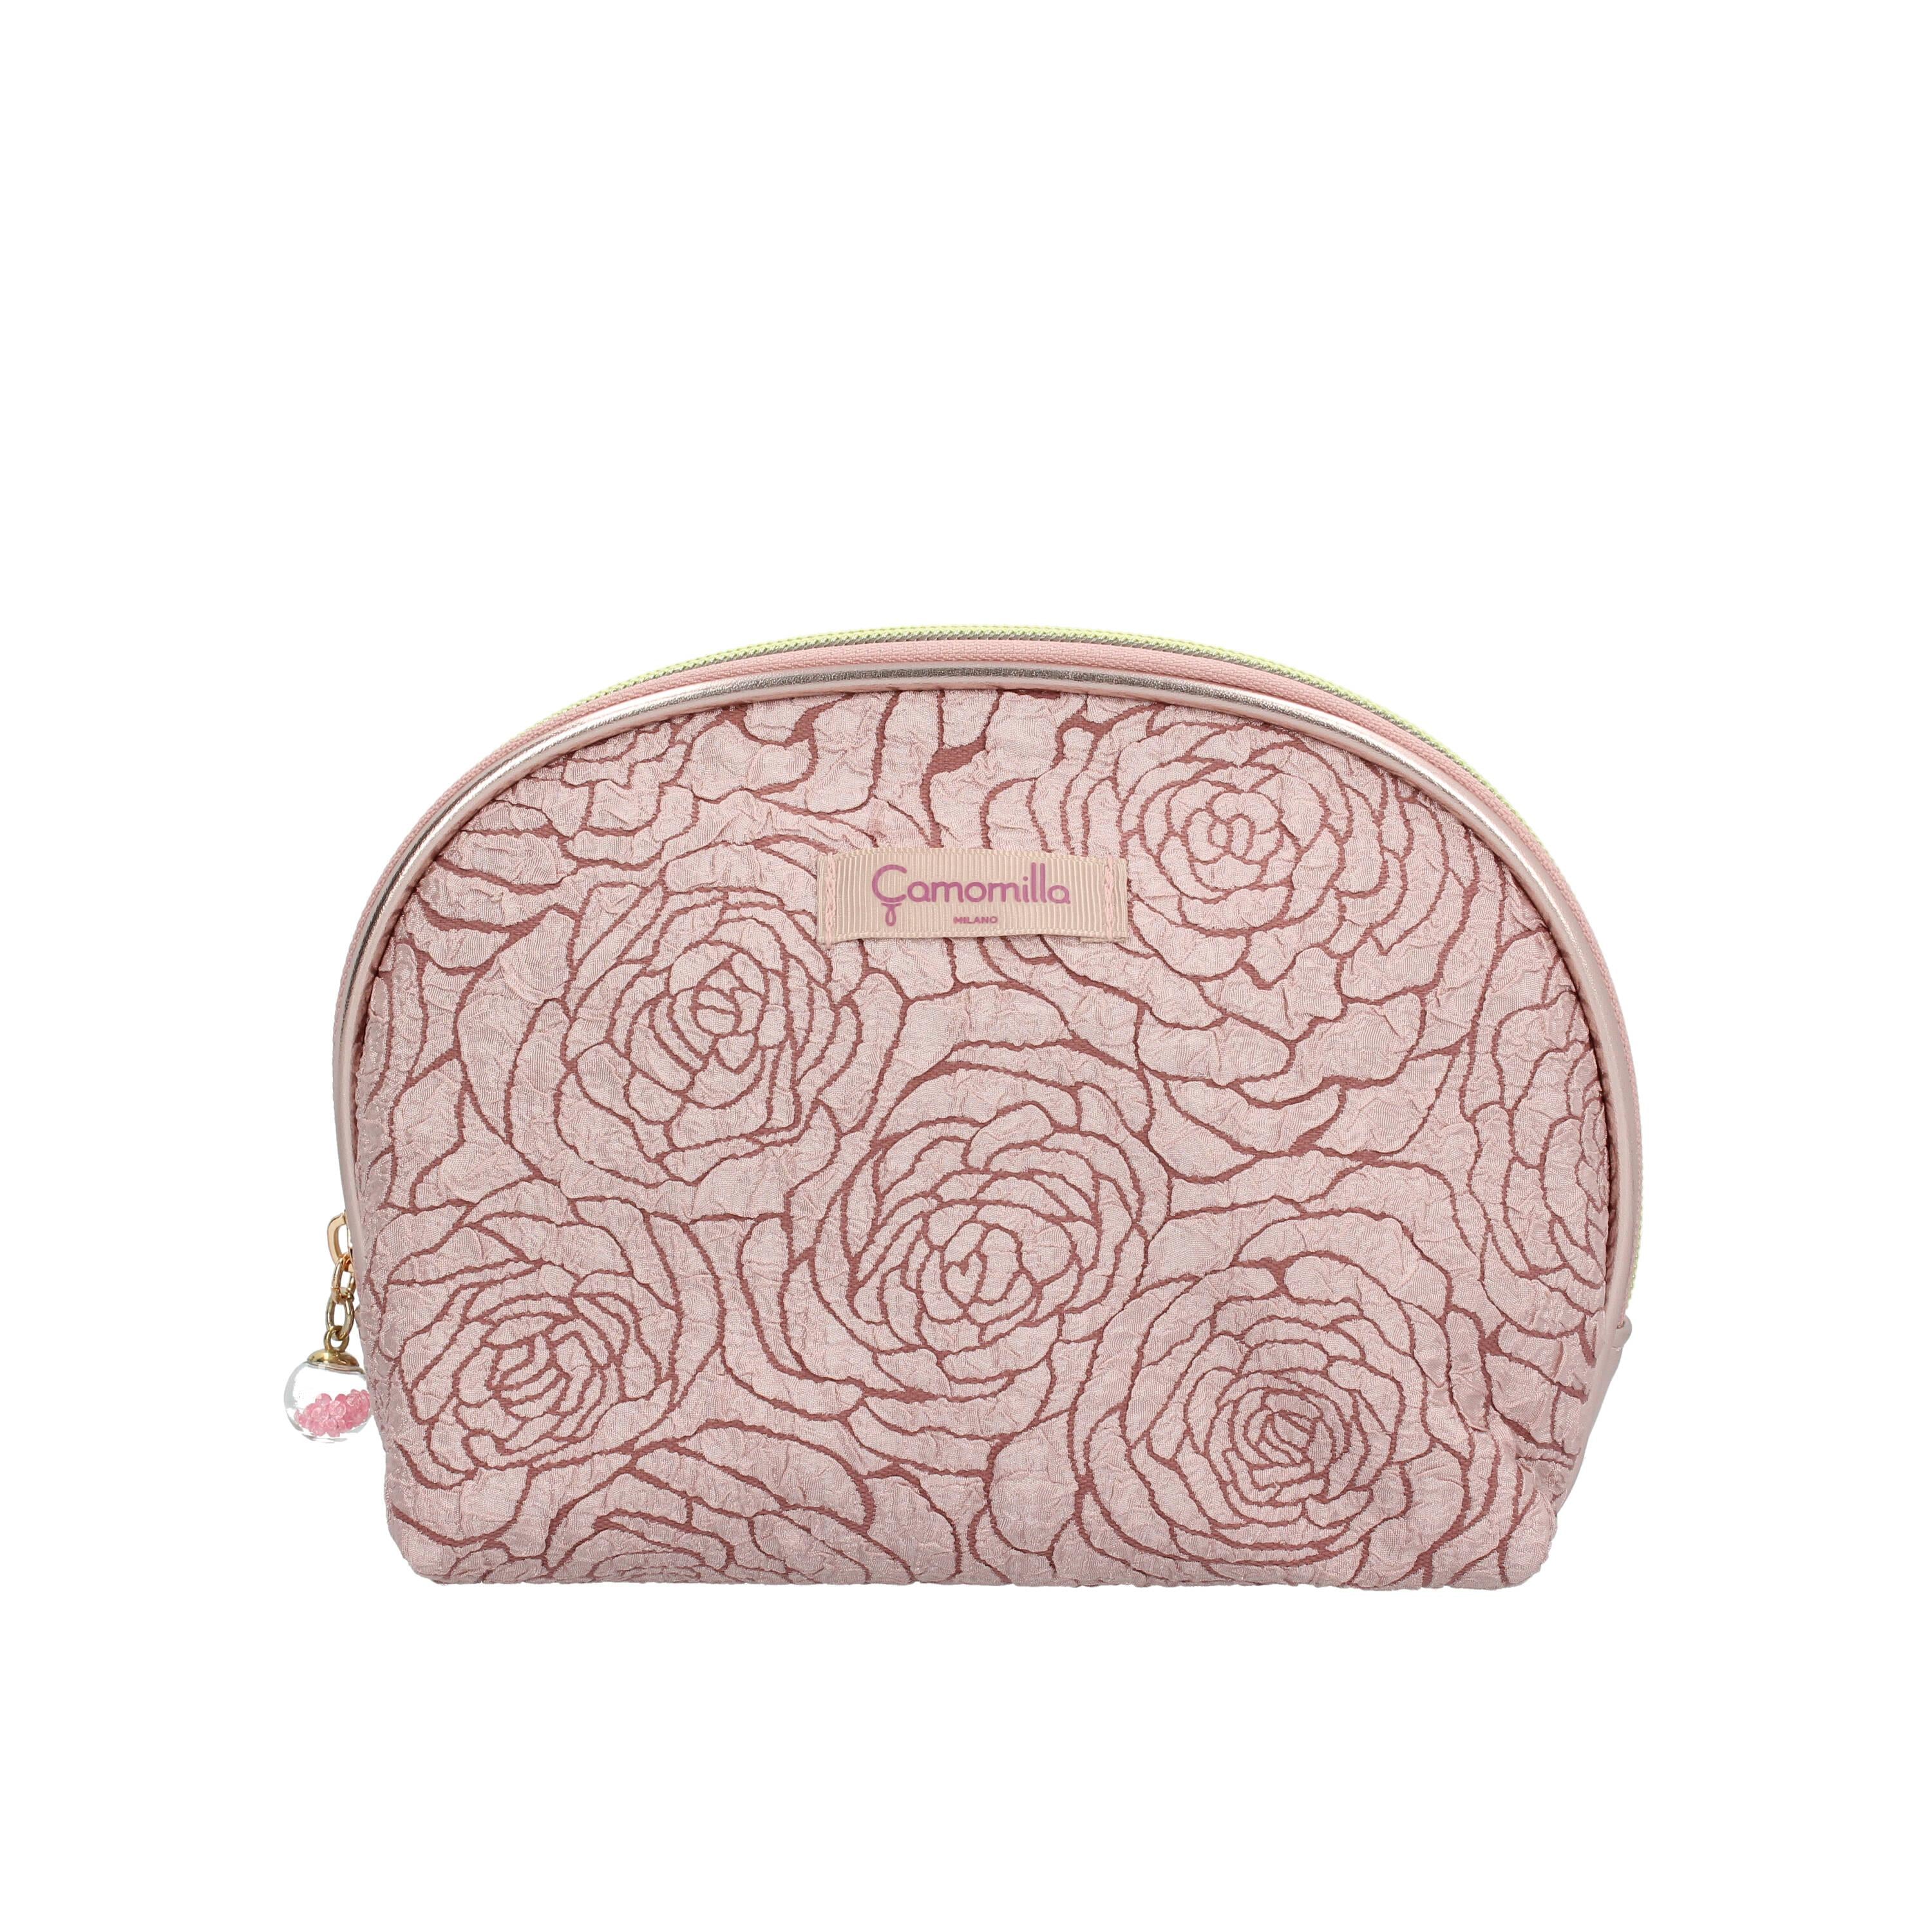 Beauty case Camomilla rosa 56306